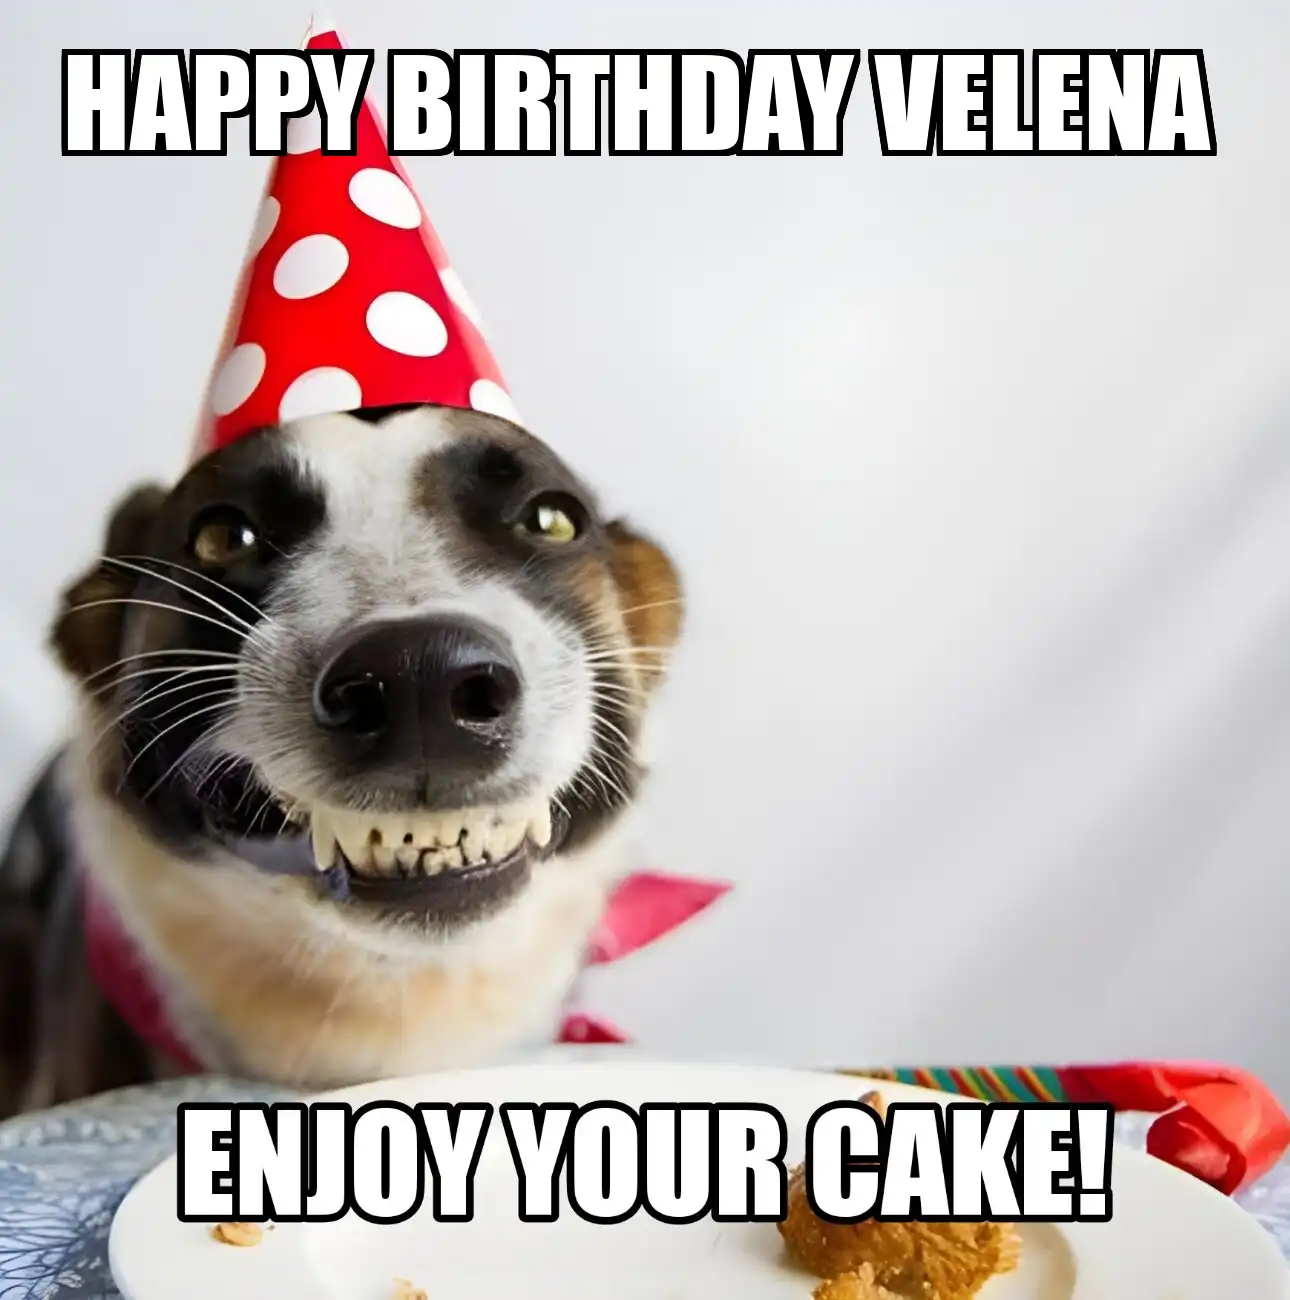 Happy Birthday Velena Enjoy Your Cake Dog Meme